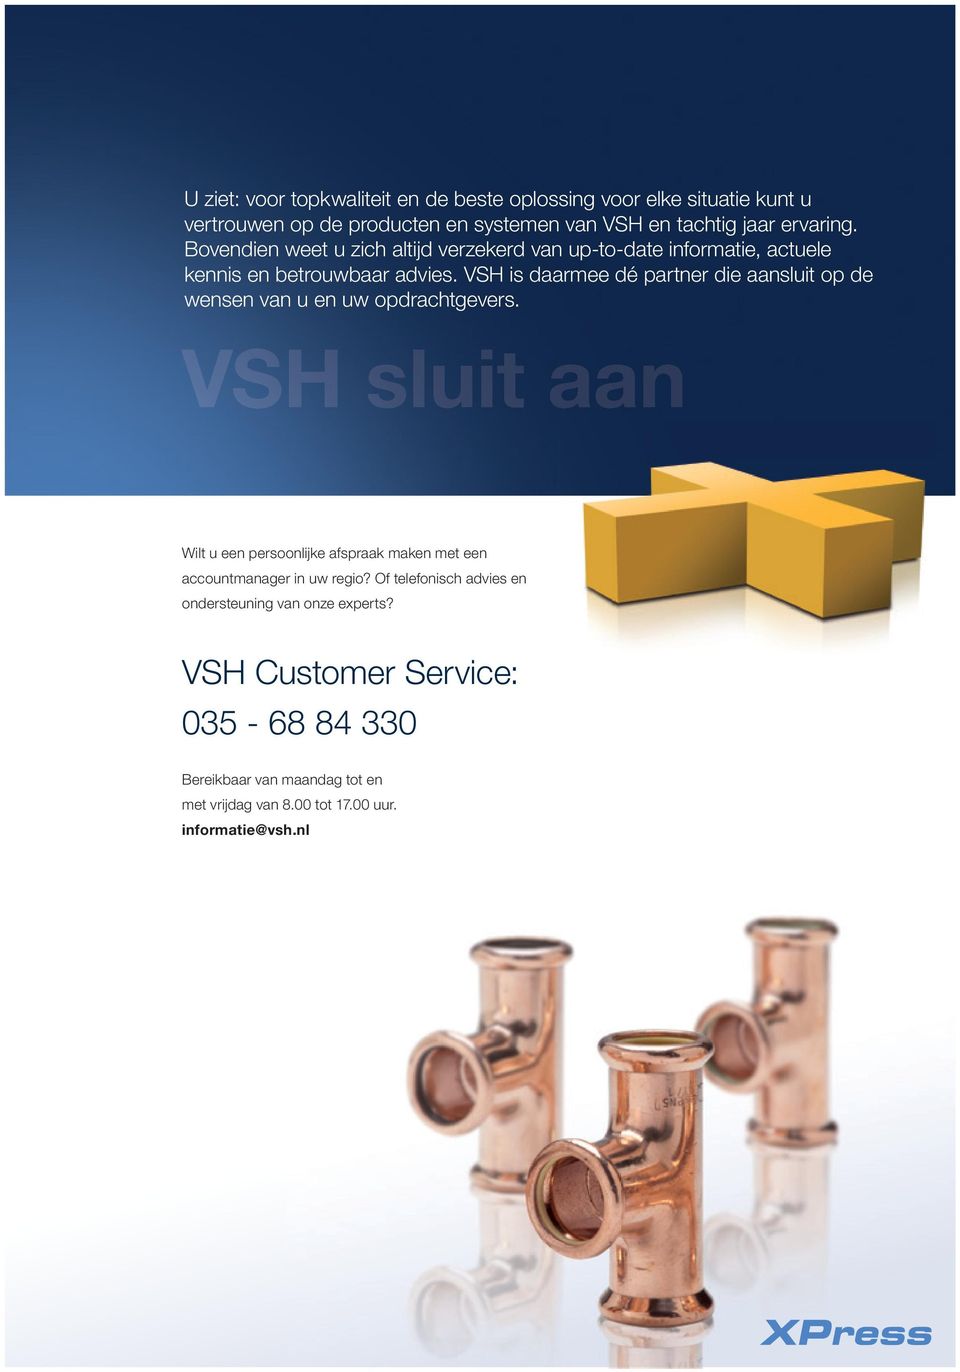 VSH is daarmee dé partner die aansluit op de wensen van u en uw opdrachtgevers.